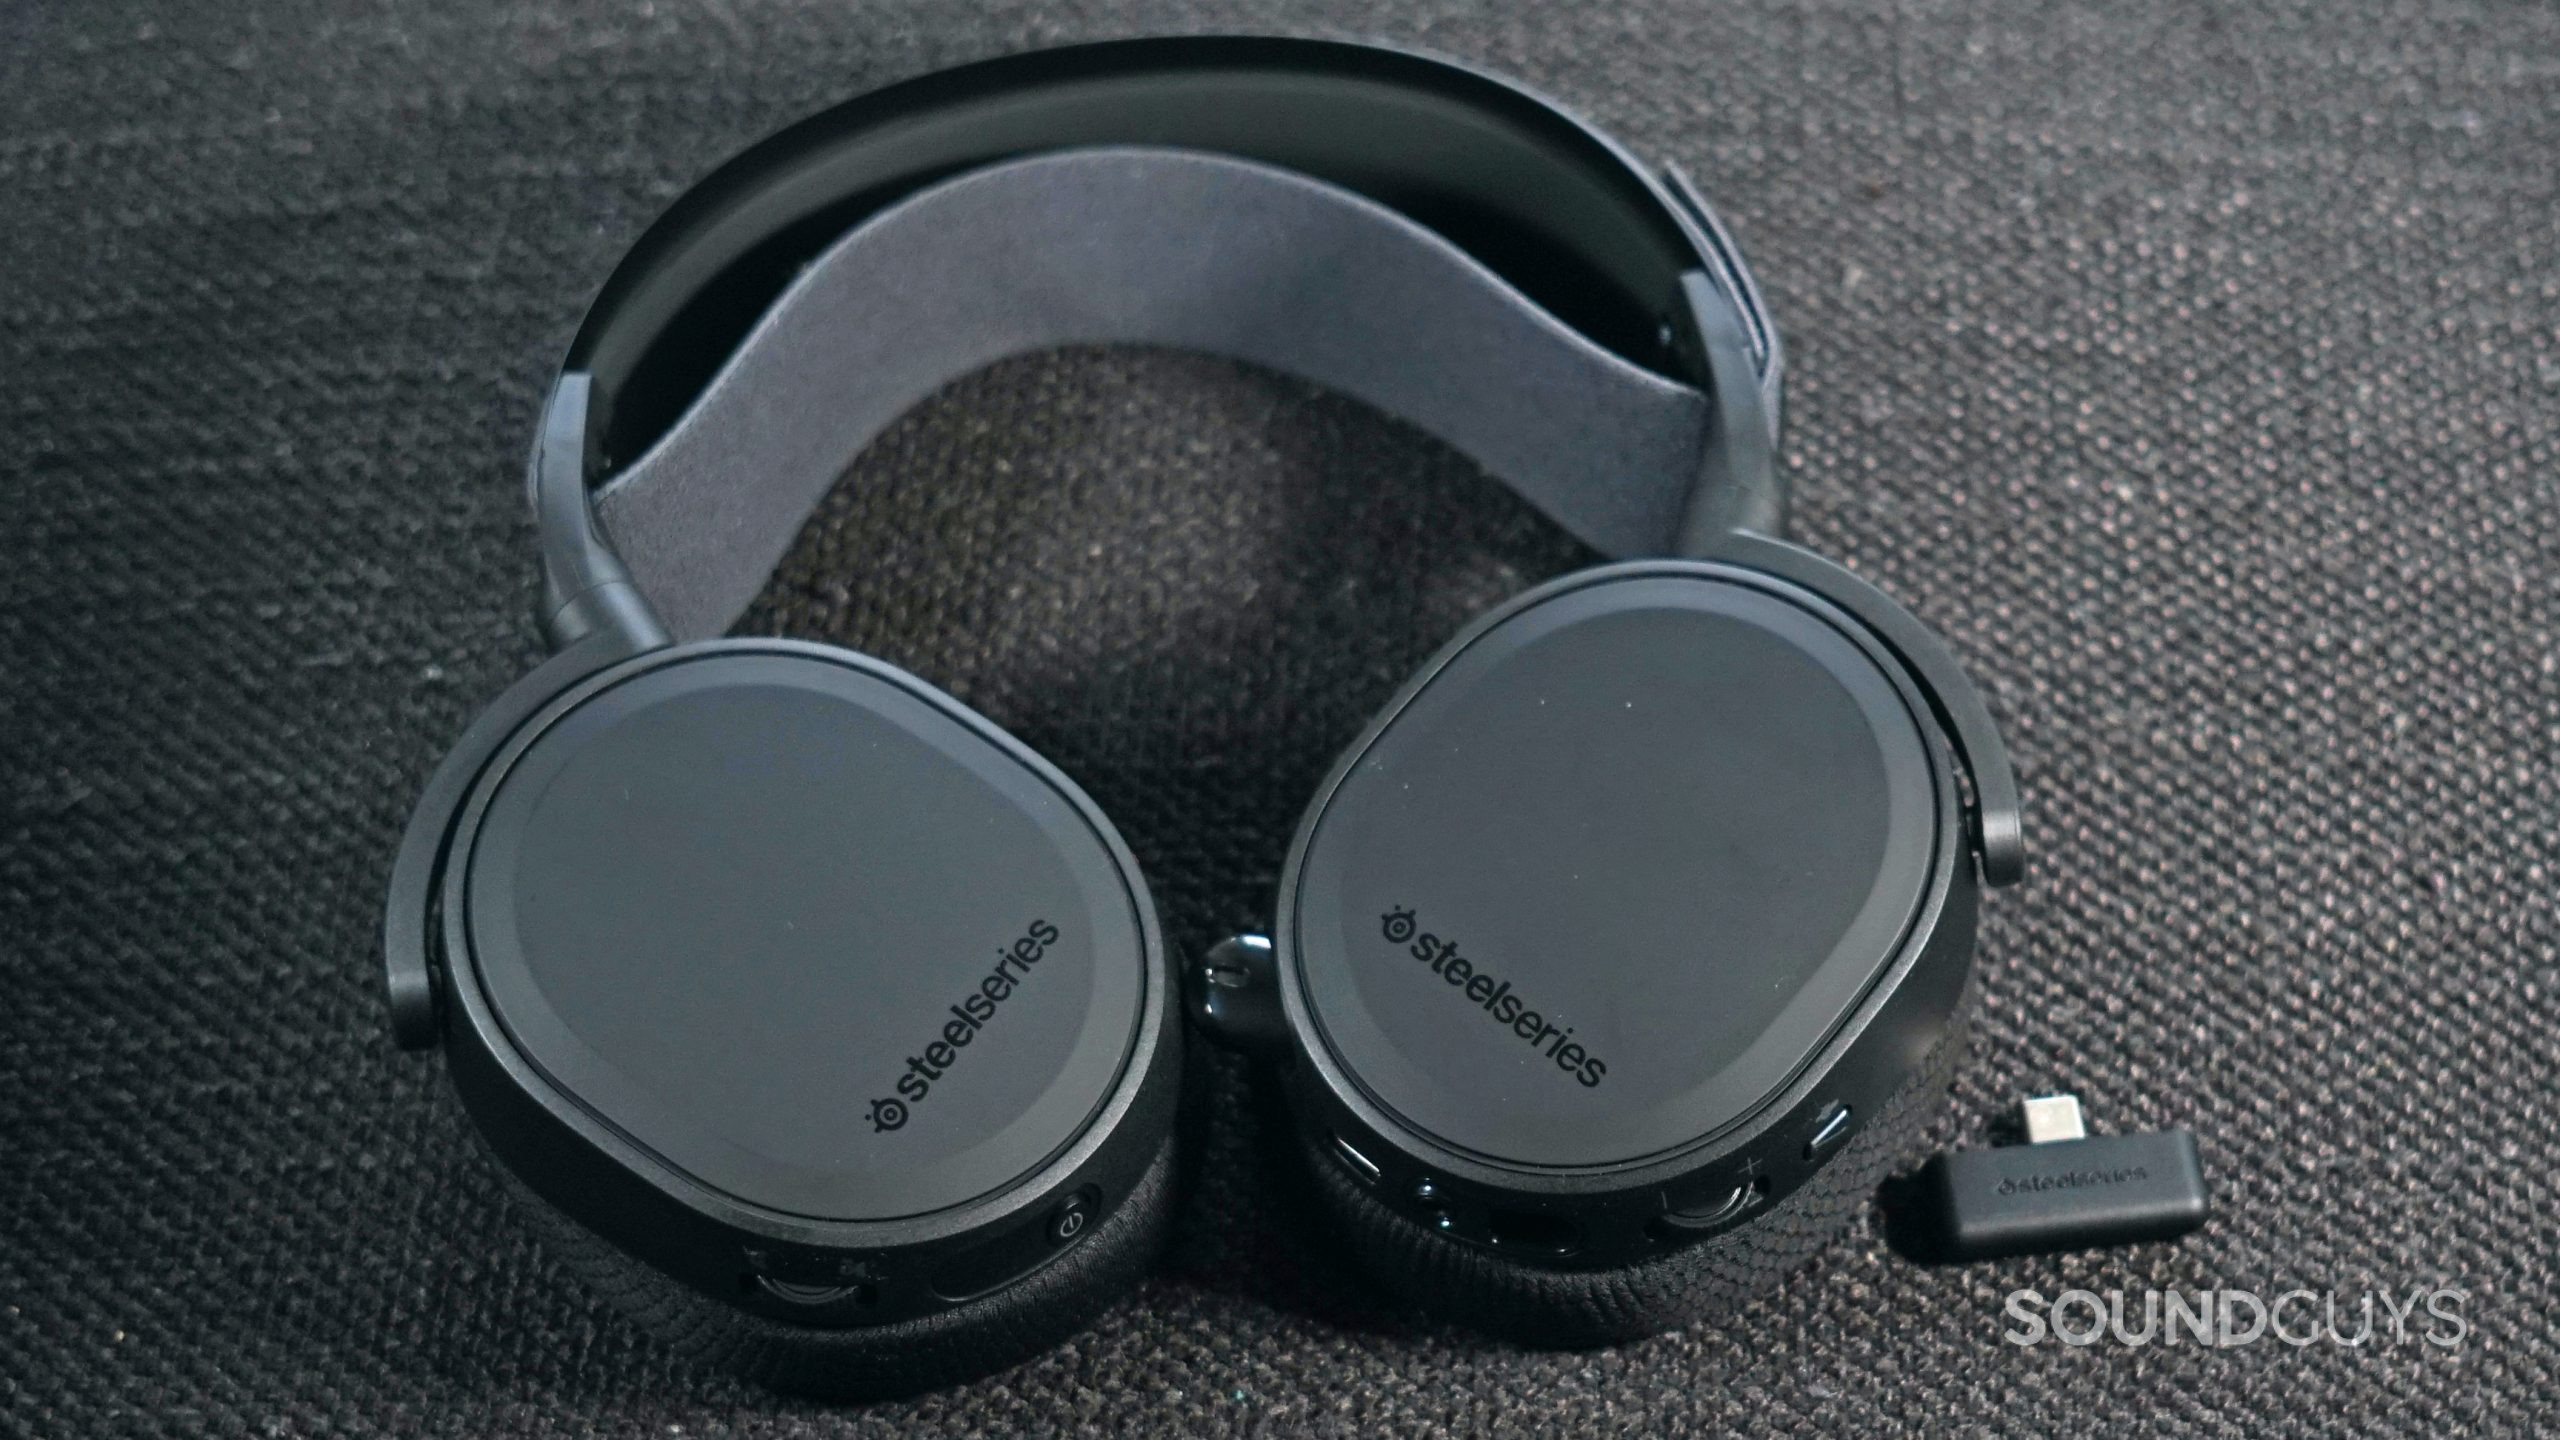 SteelSeries Arctis 7+ Wireless Headphones Review - Niche Gamer